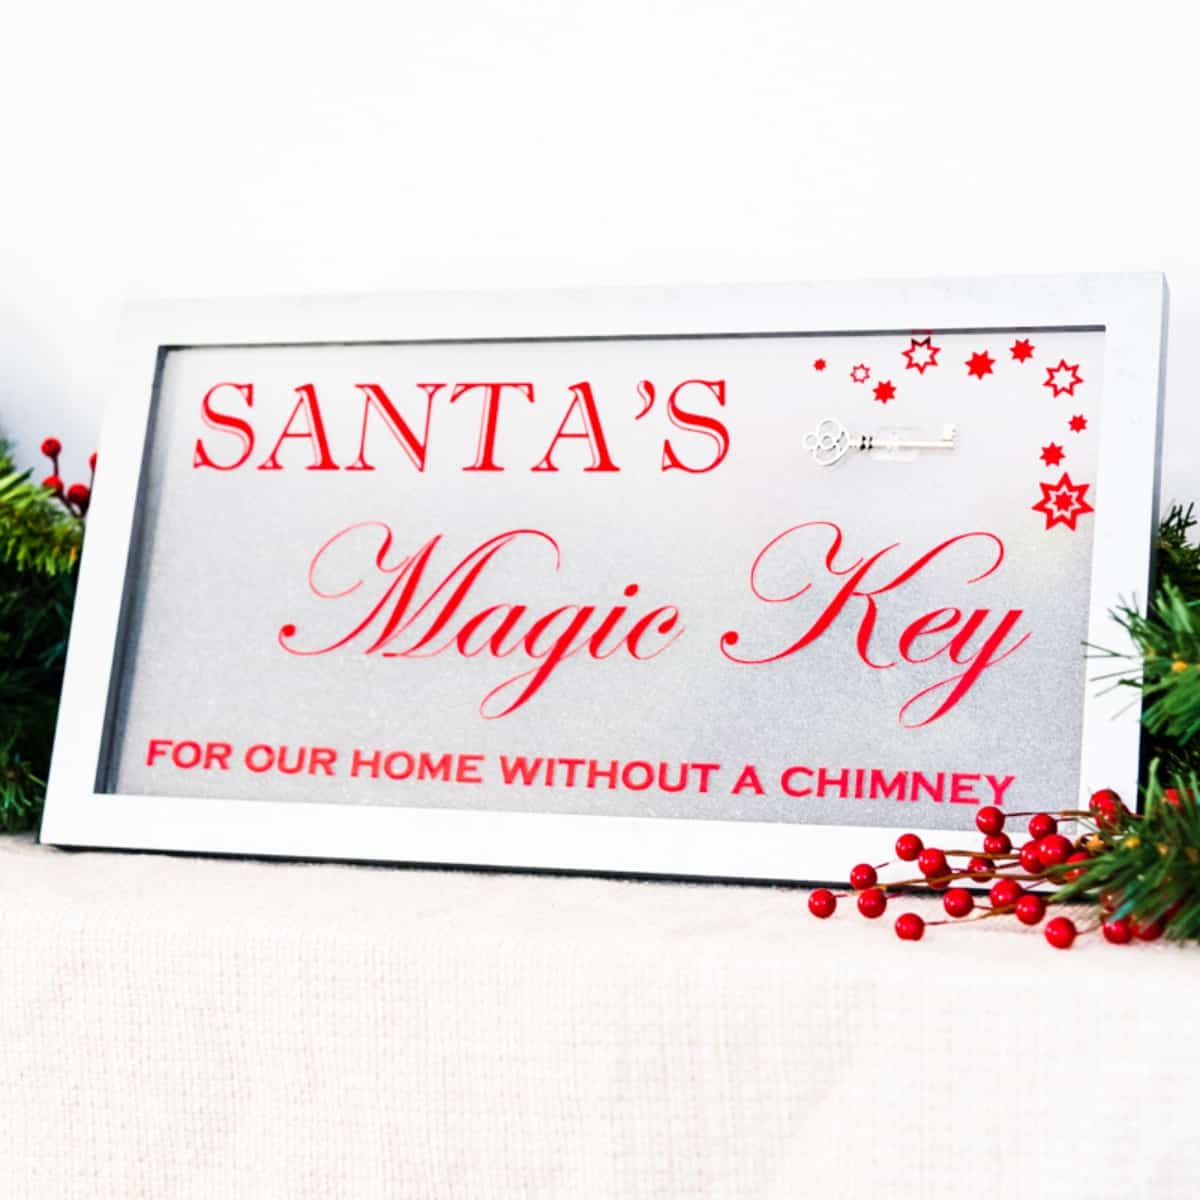 Santa's Magic Key sign surrounded by holiday garland